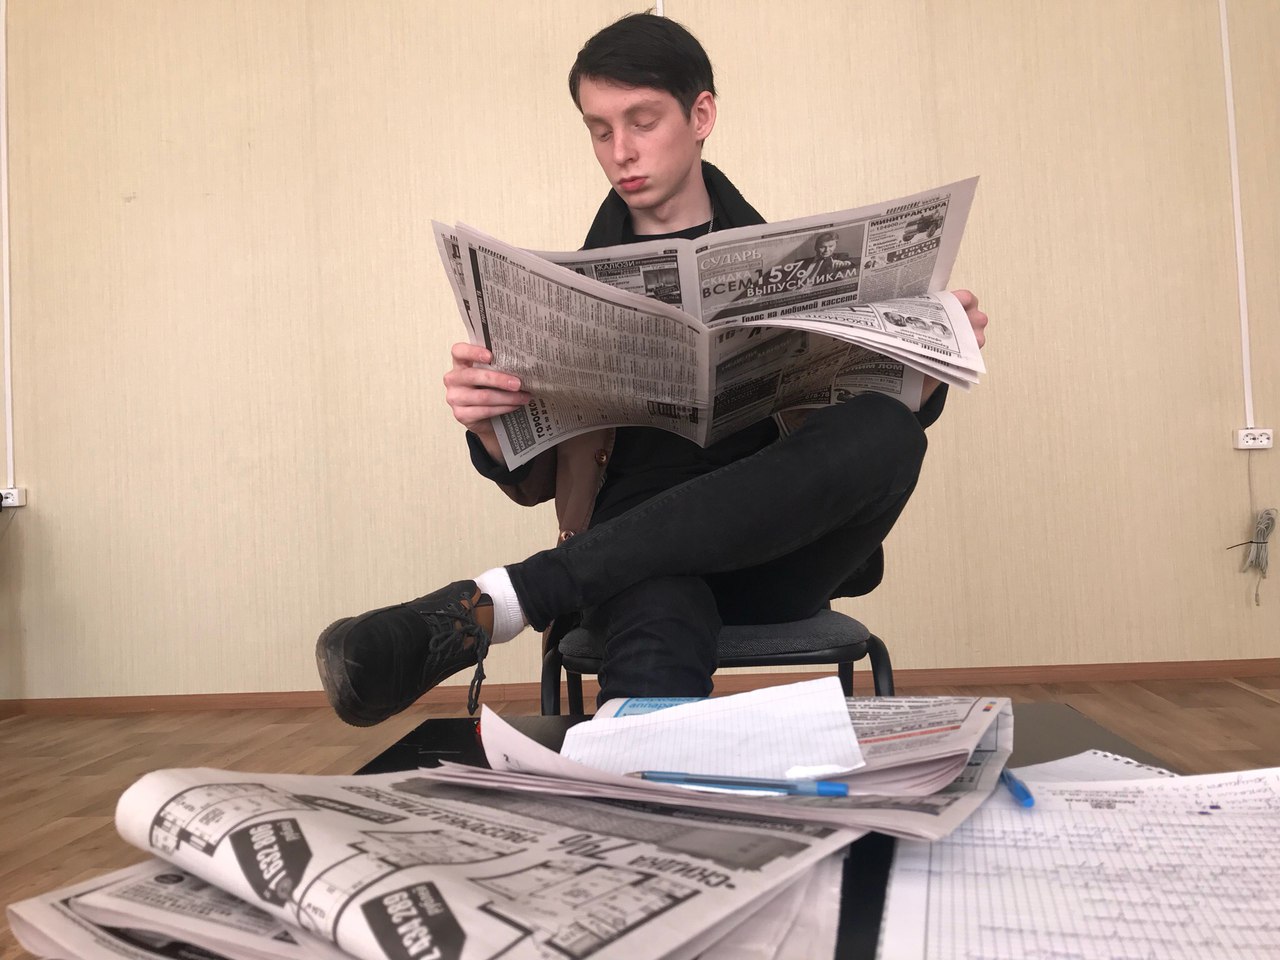 Newspaper man. Мужчина с газетой. Чтение газеты. Читает газету. Человек читает газету.